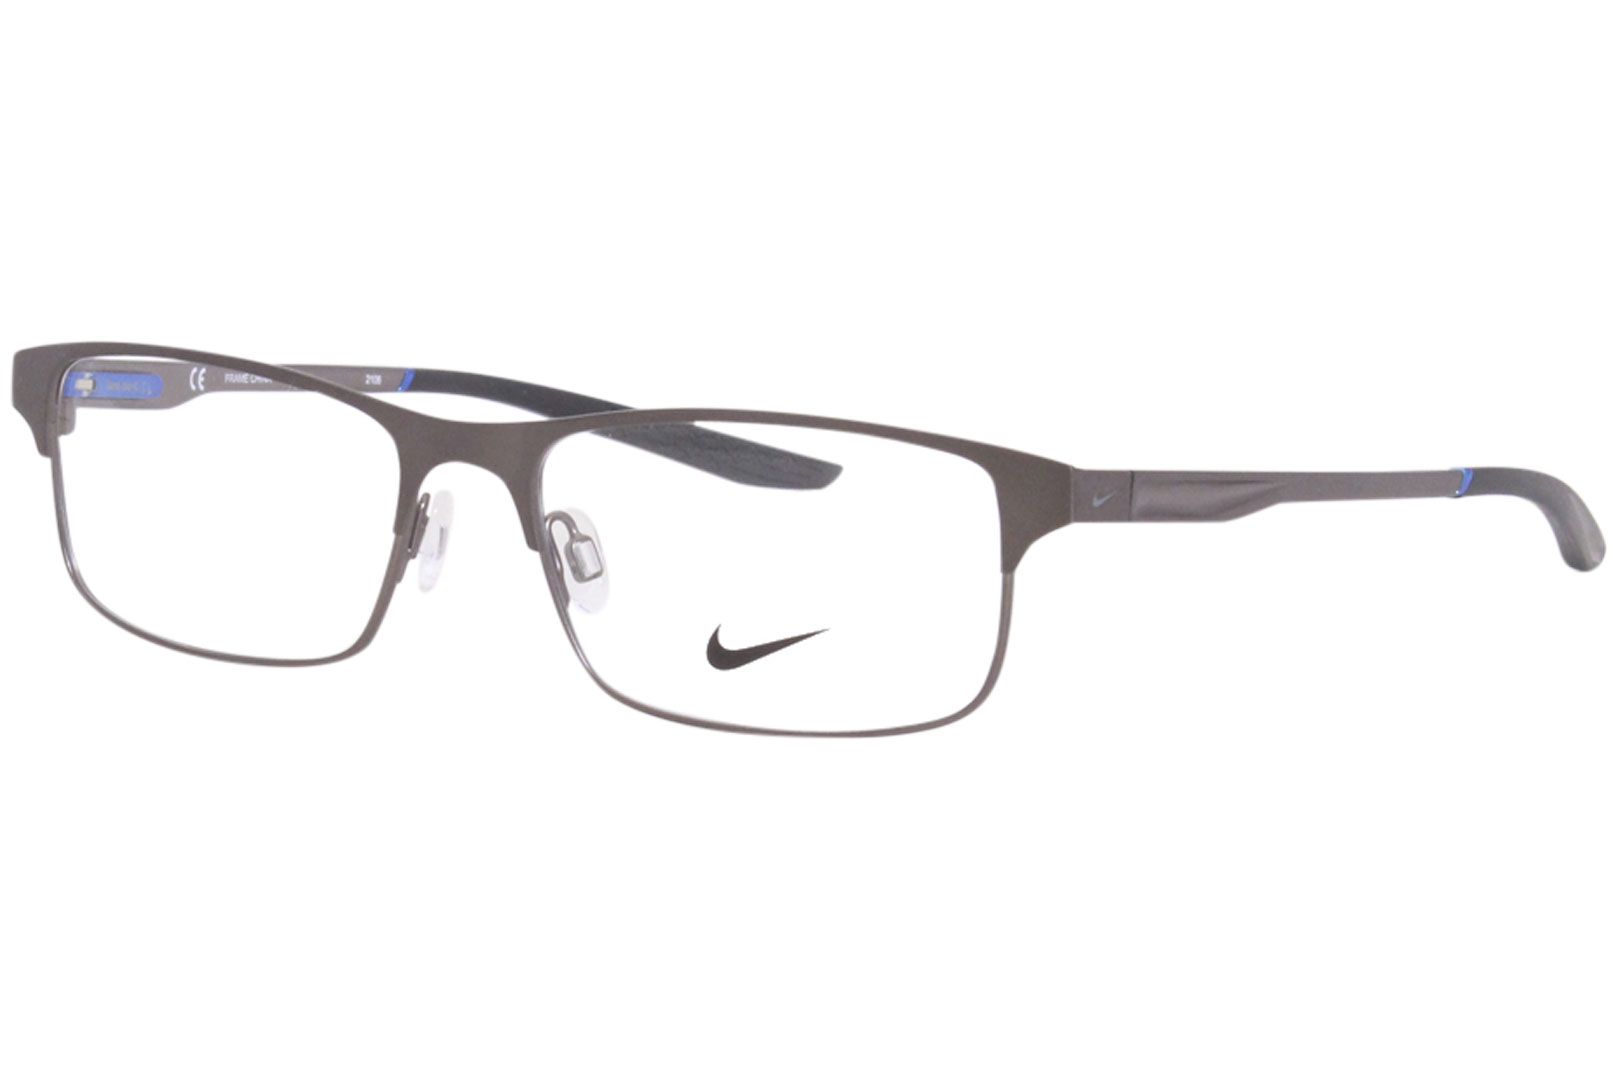 Nike 8046 Eyeglasses Mens Full Rim Rectangular Optical Frame